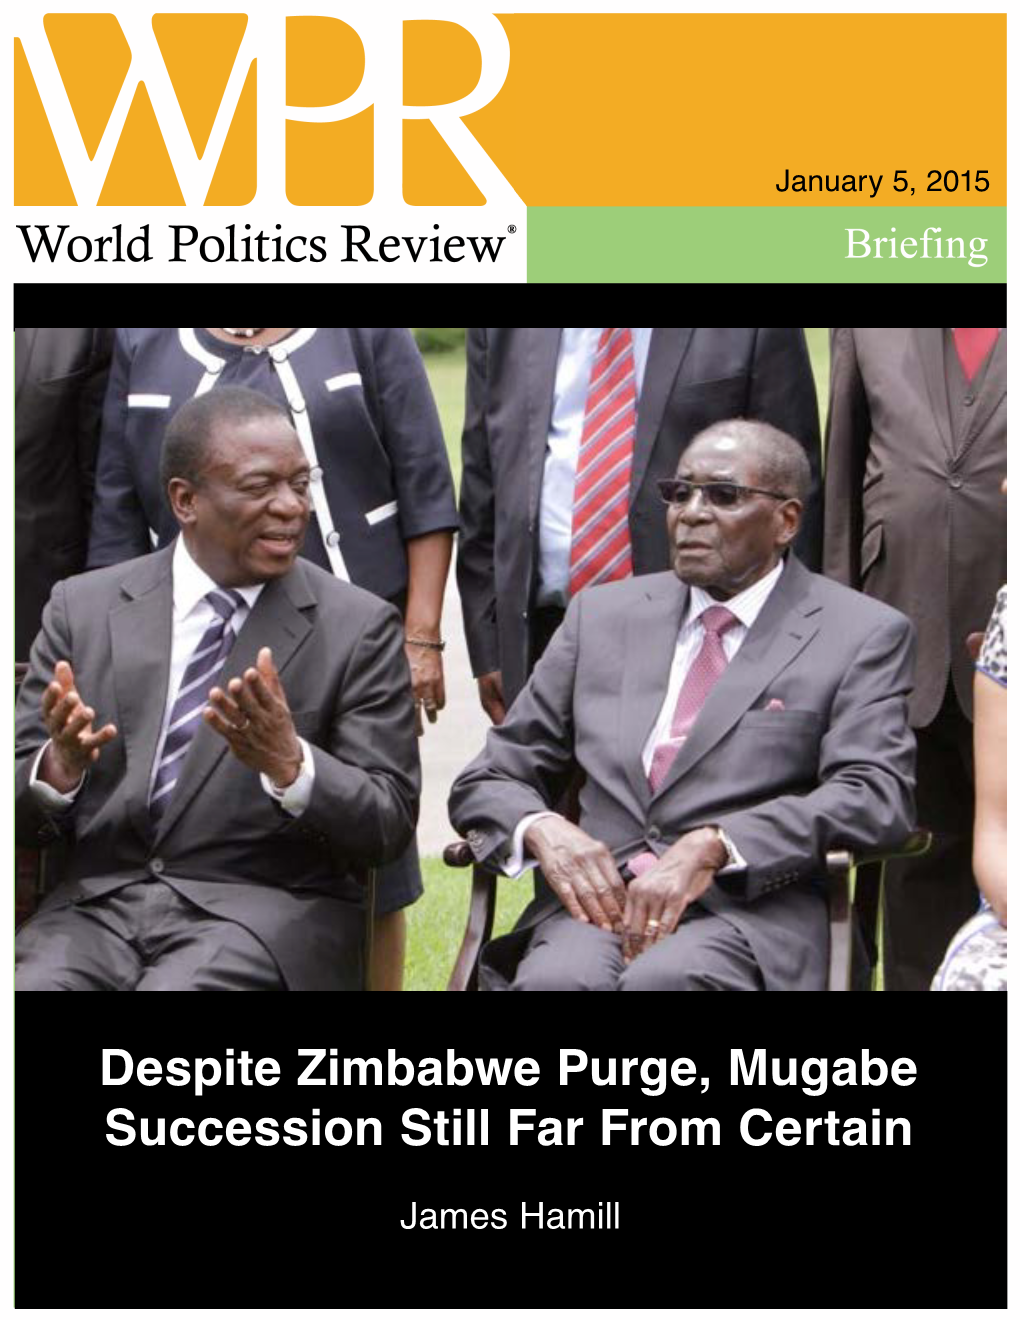 "Despite Zimbabwe Purge, Mugabe Succession